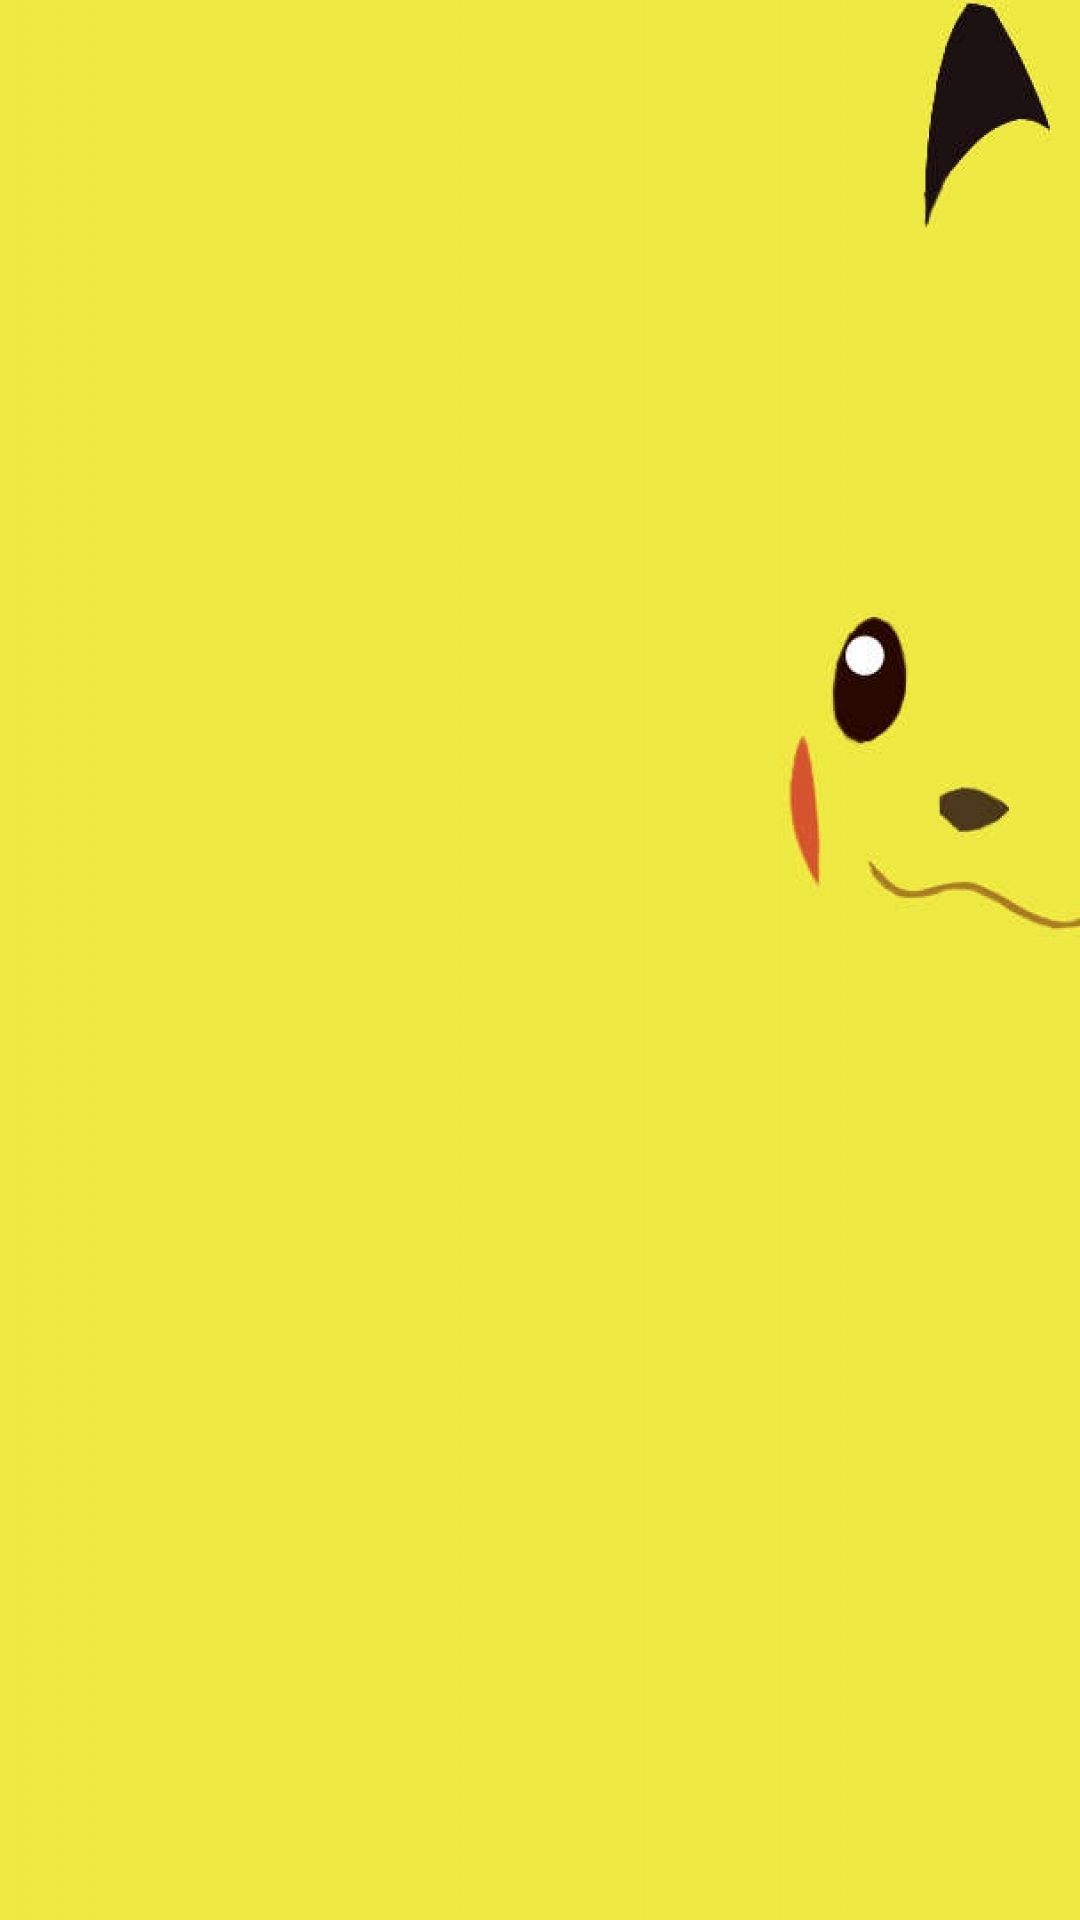 1080x1920 pokemon pikachu wallpaper hd